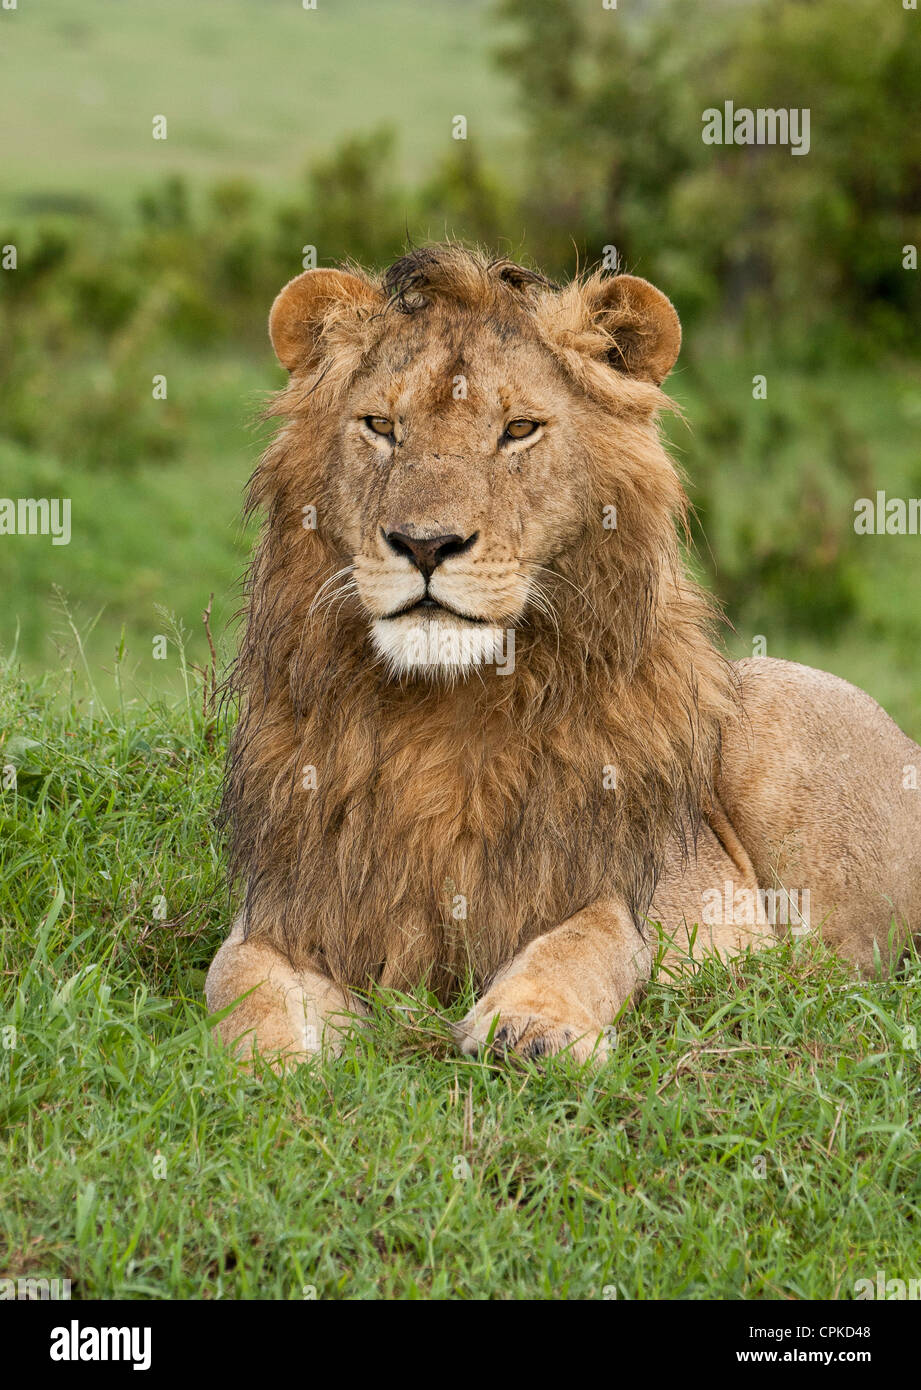 Retrato de un joven león (Panthera leo) mirando a través de la ciénaga en la Reserva Nacional de Masai Mara, Kenya, Africa Oriental. Foto de stock